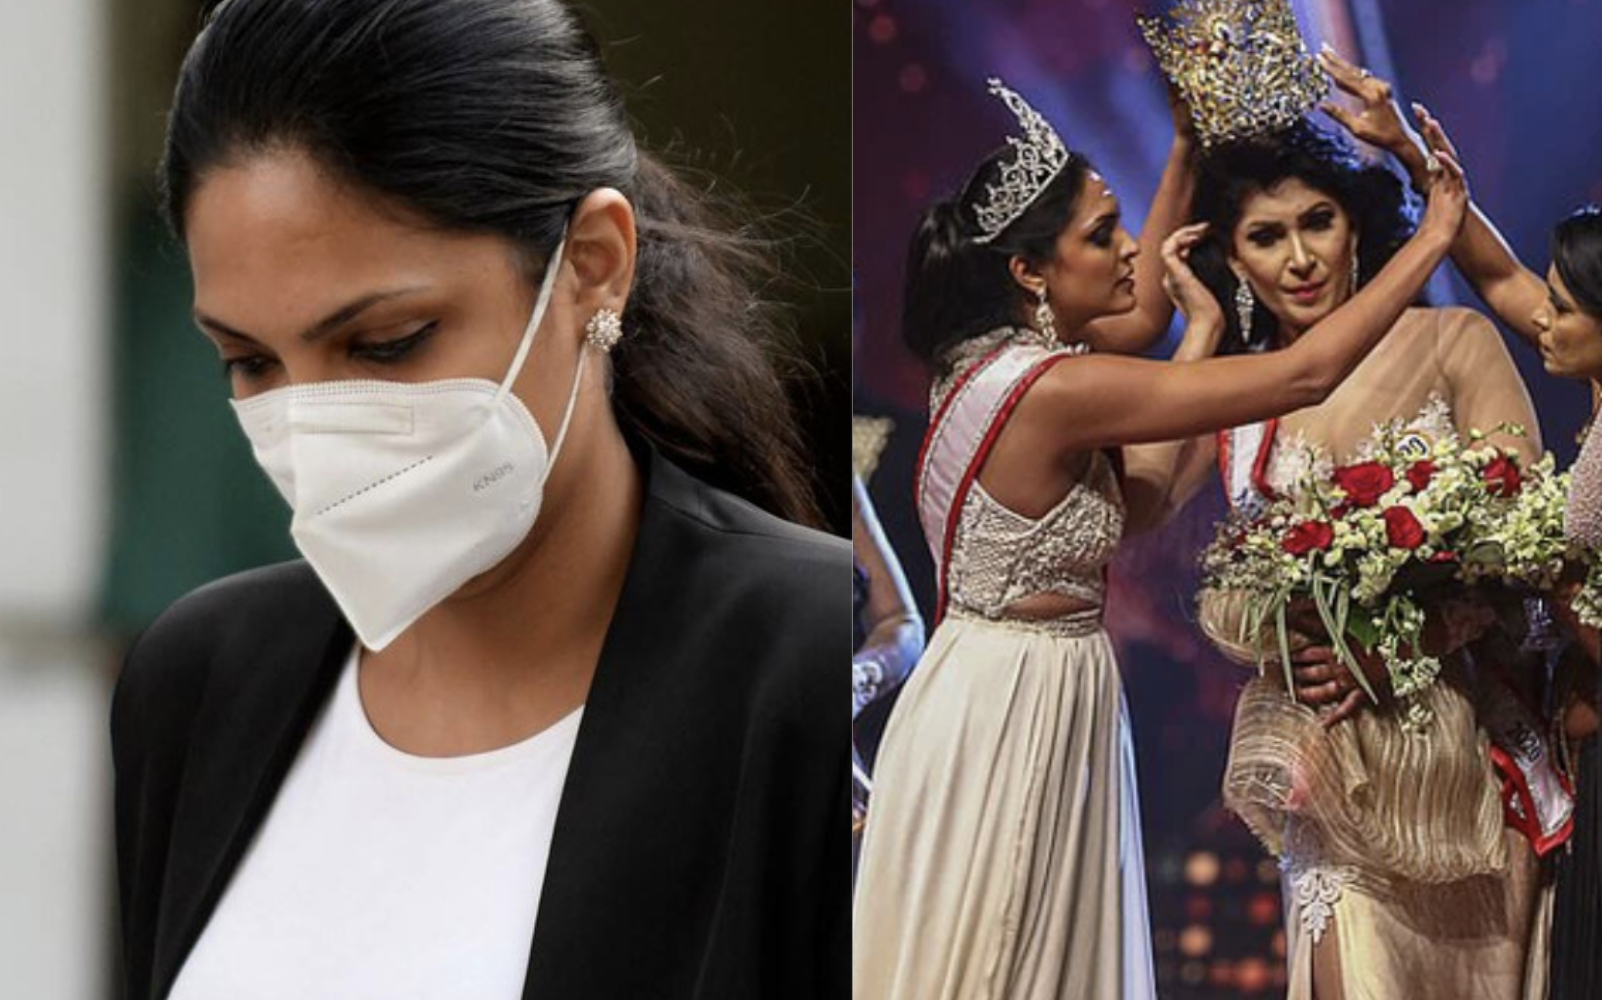 Người giật phăng vương miện của tân Hoa hậu Sri Lanka trên sóng truyền hình nhận kết cục thích đáng, “nữ chính” lên tiếng đầy thâm sâu sau đó